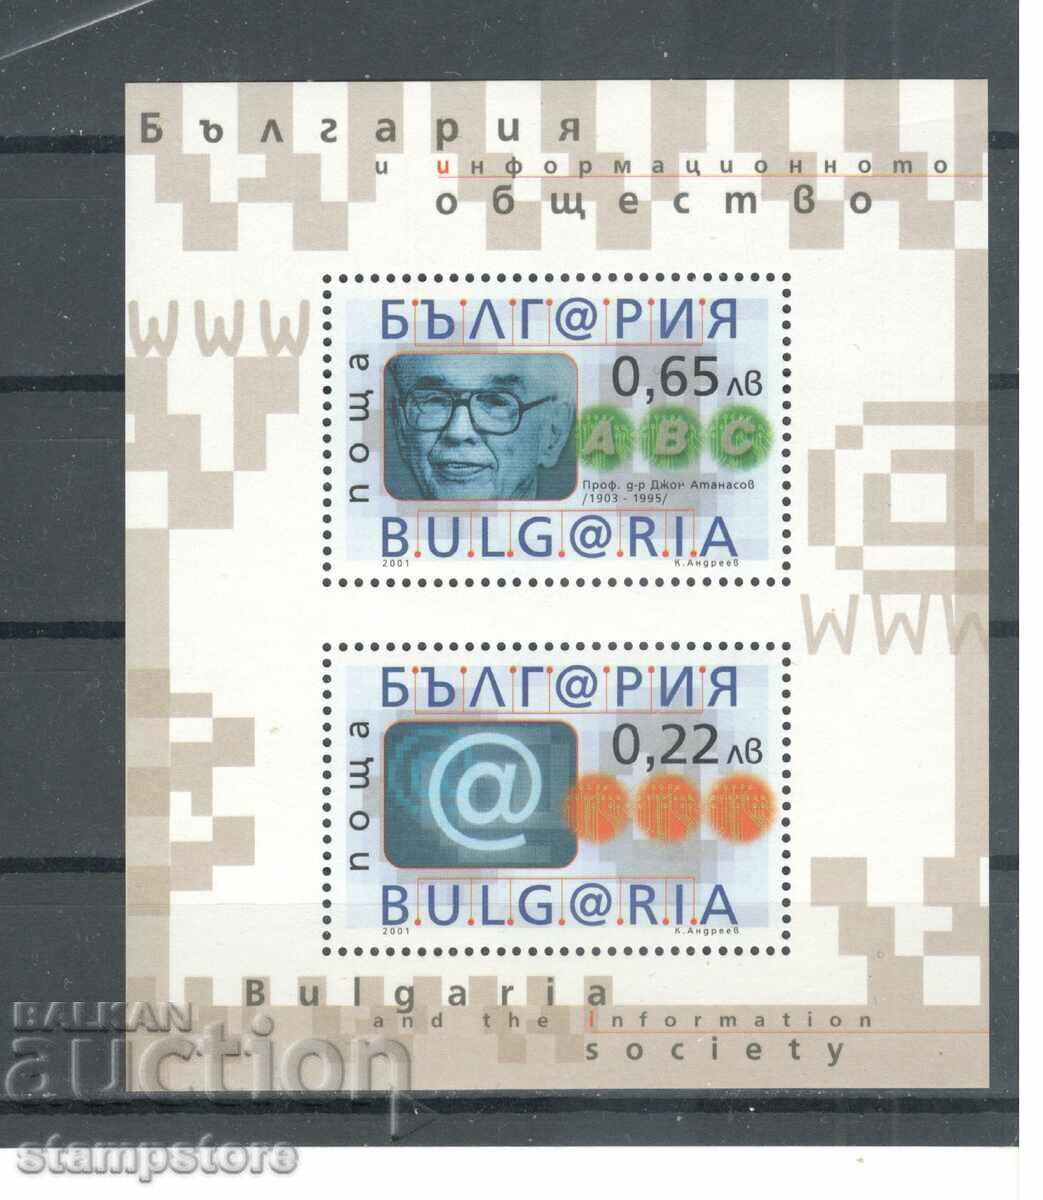 Bulgaria și societatea informațională